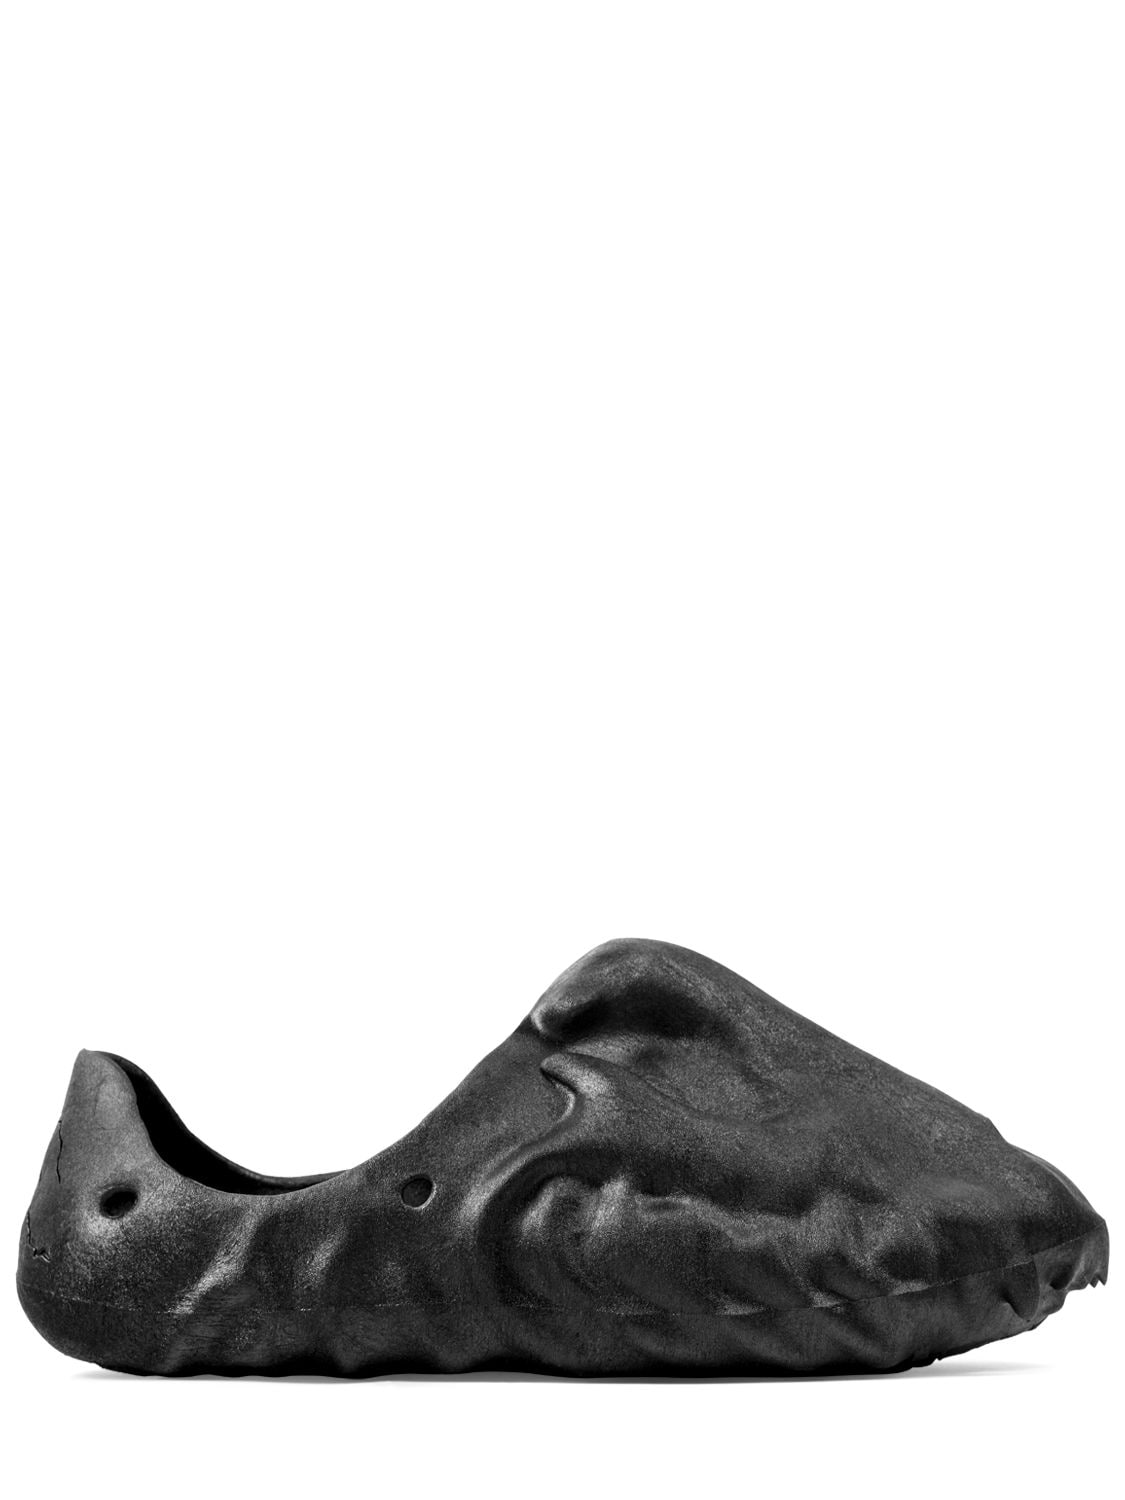 Image of Fossil X Jaguar Jag Foam Runner Sneakers